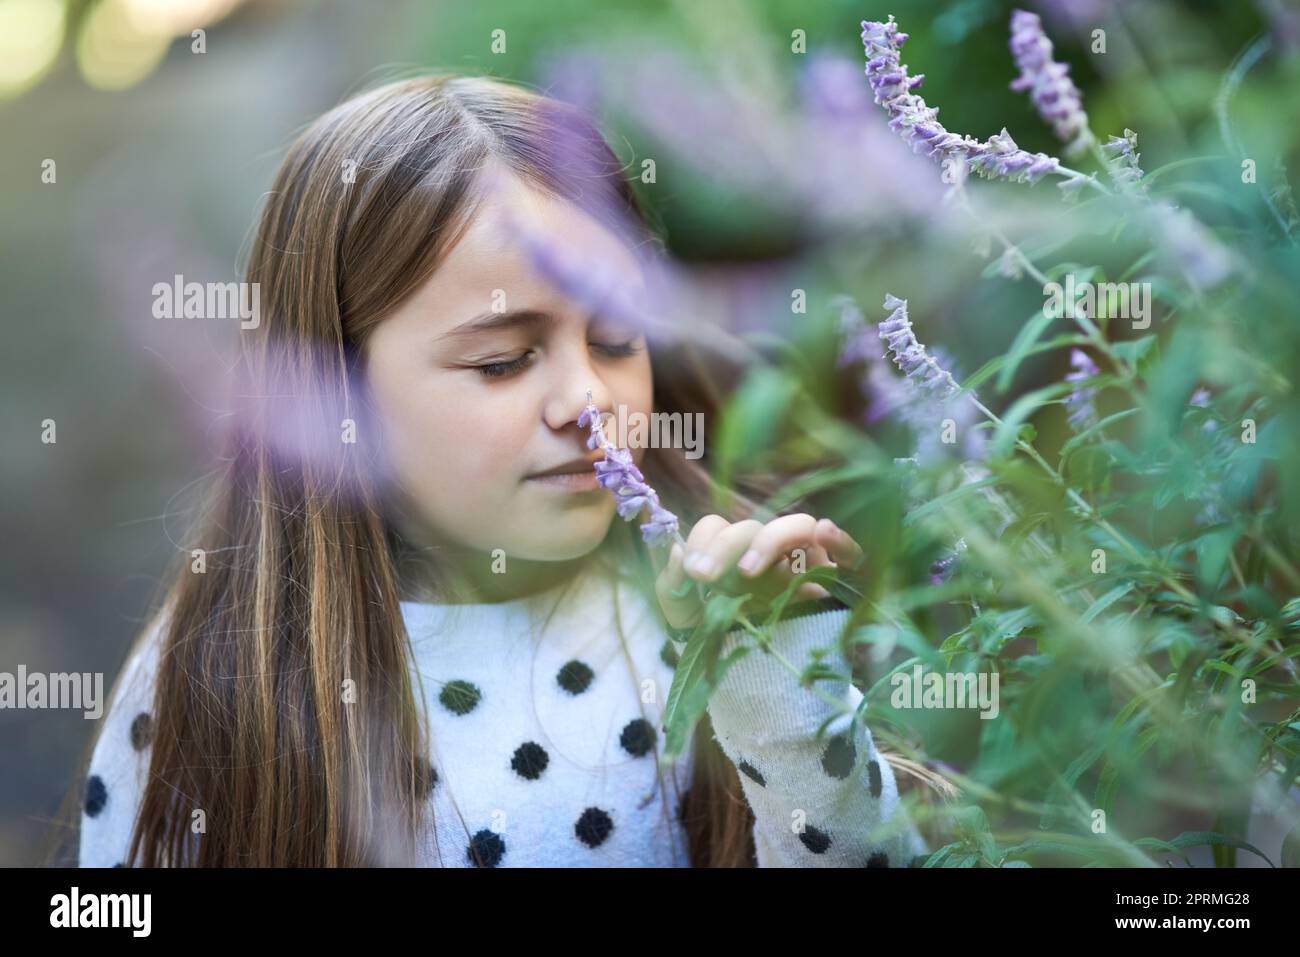 Adora passeggiare nel giardino per sentire l'odore della lavanda, una bambina che odora una pianta di lavanda fuori. Foto Stock